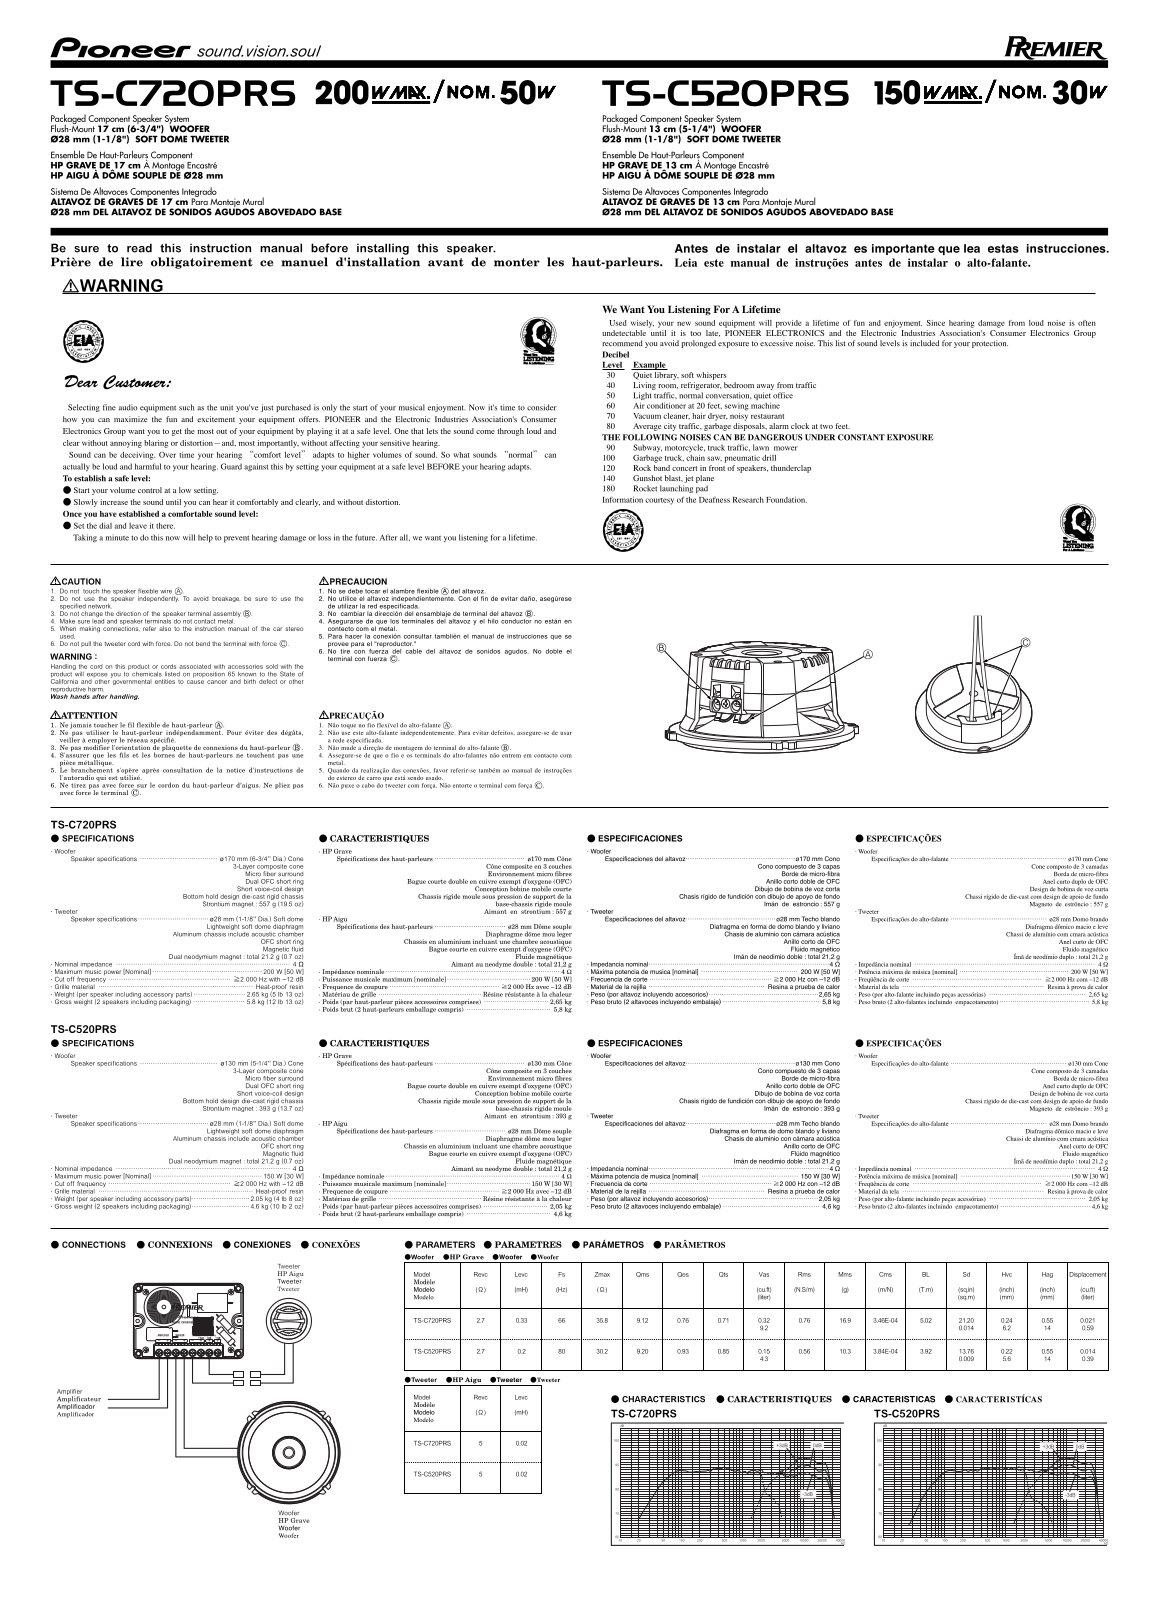 Pioneer TS-C720PRS, TS-C520PRS User Manual